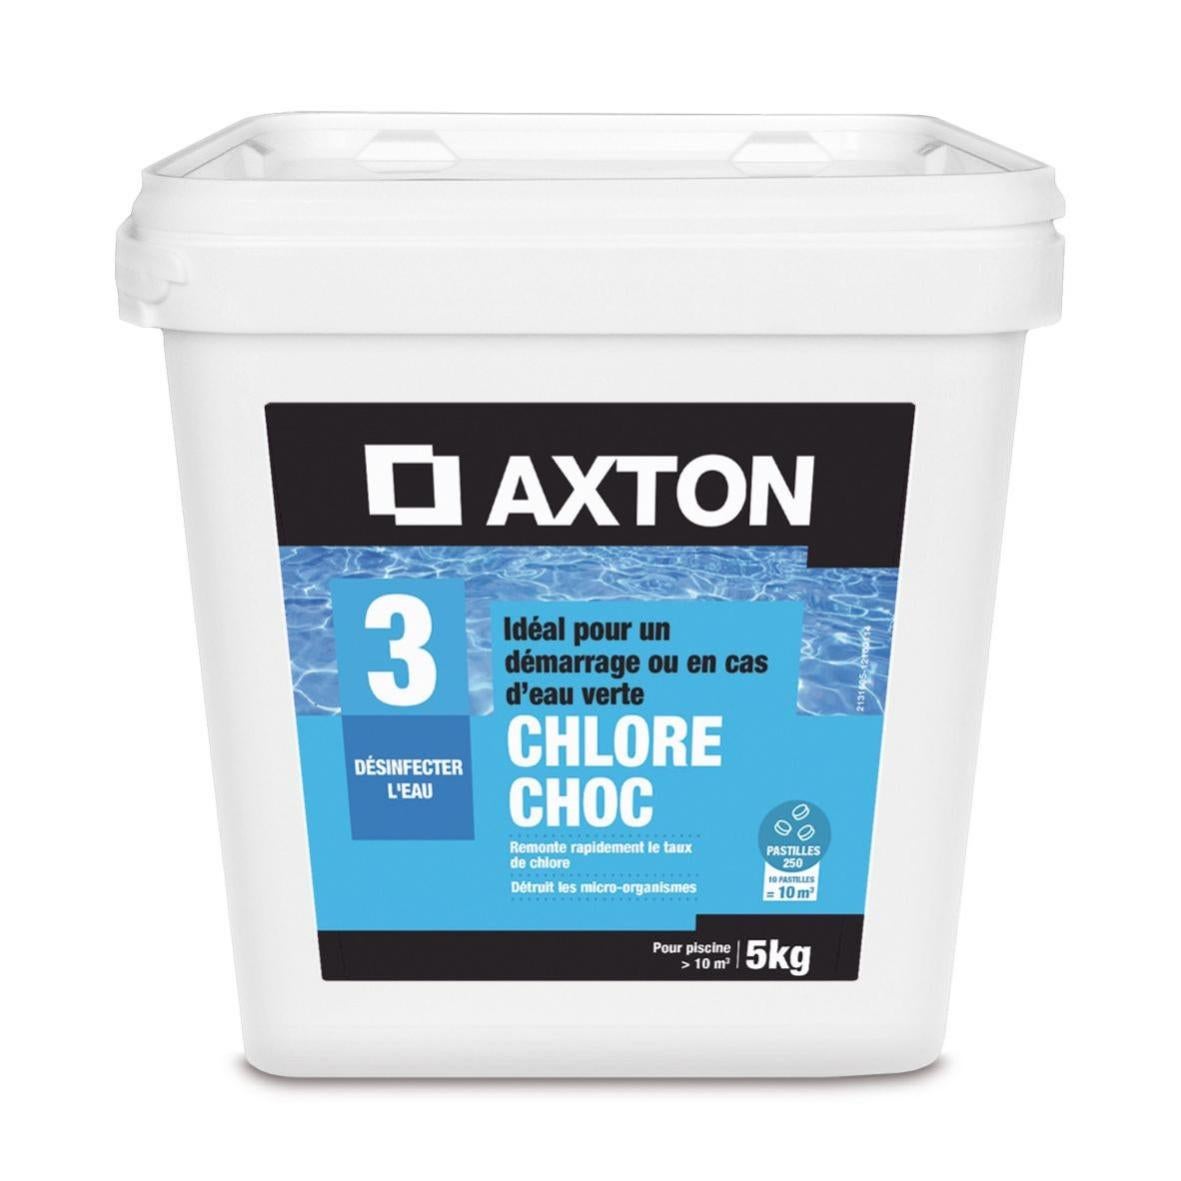 Combien De Galet De Chlore Par M3 Chlore choc piscine AXTON, pastille 5 kg | Leroy Merlin